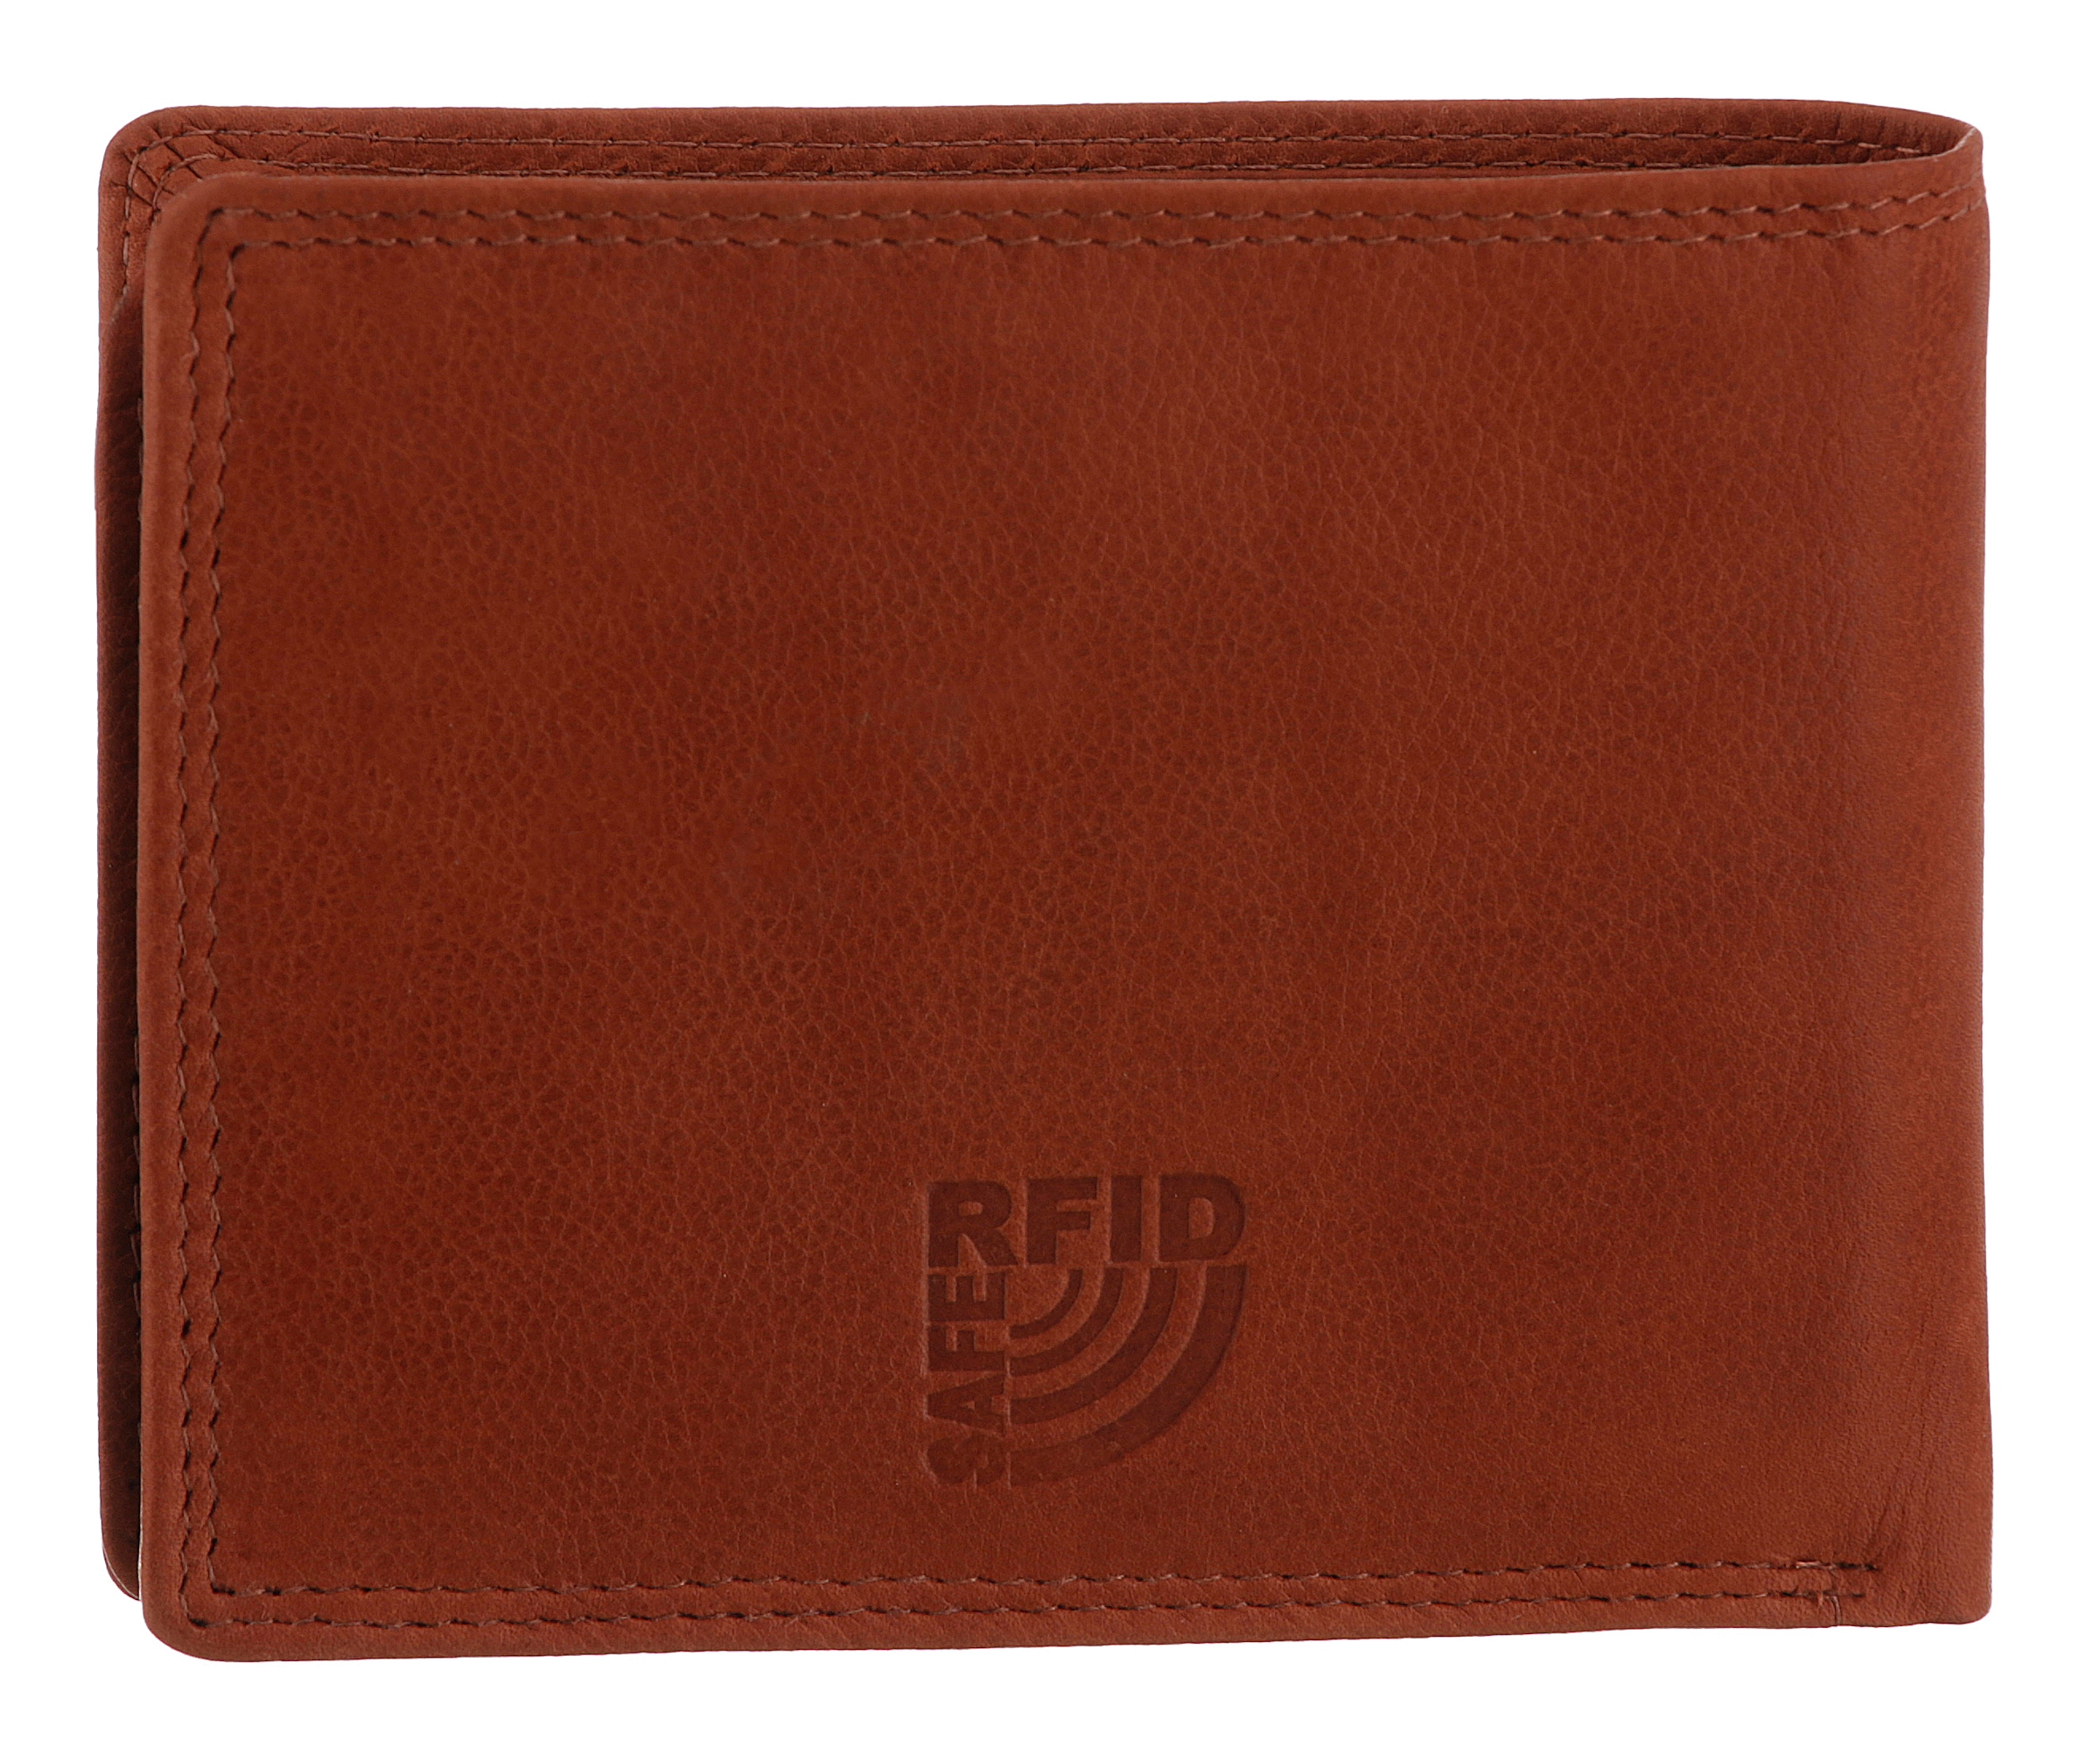 MUSTANG Geldbörse »Udine leather wallet side opening«, mit RFID-Schutz